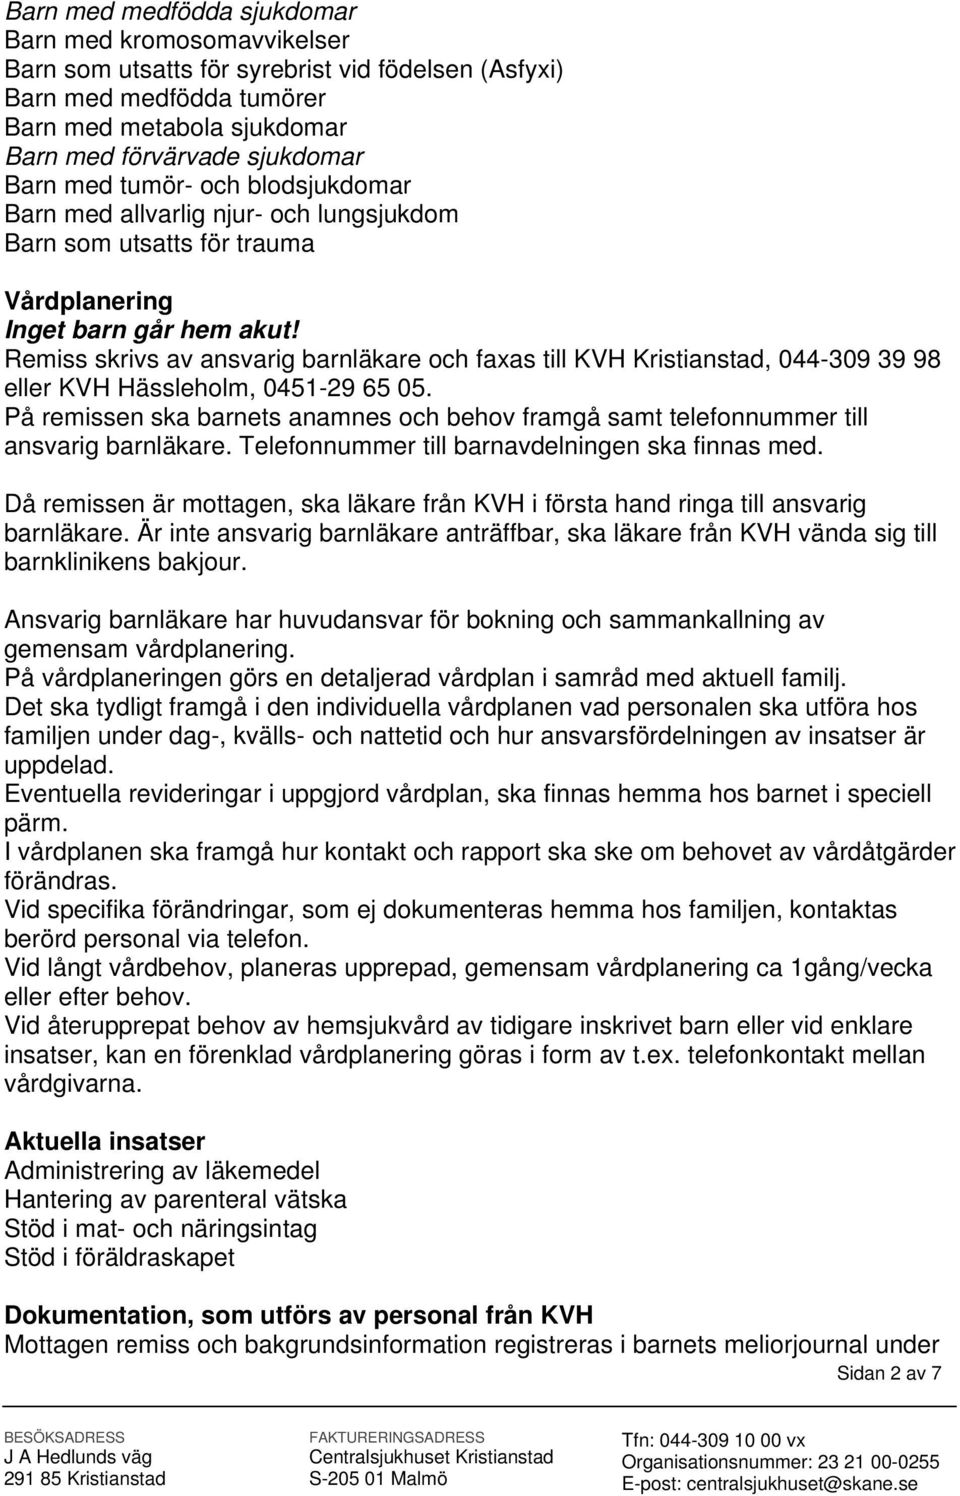 Remiss skrivs av ansvarig barnläkare och faxas till Kristianstad, 044-309 39 98 eller Hässleholm, 0451-29 65 05.